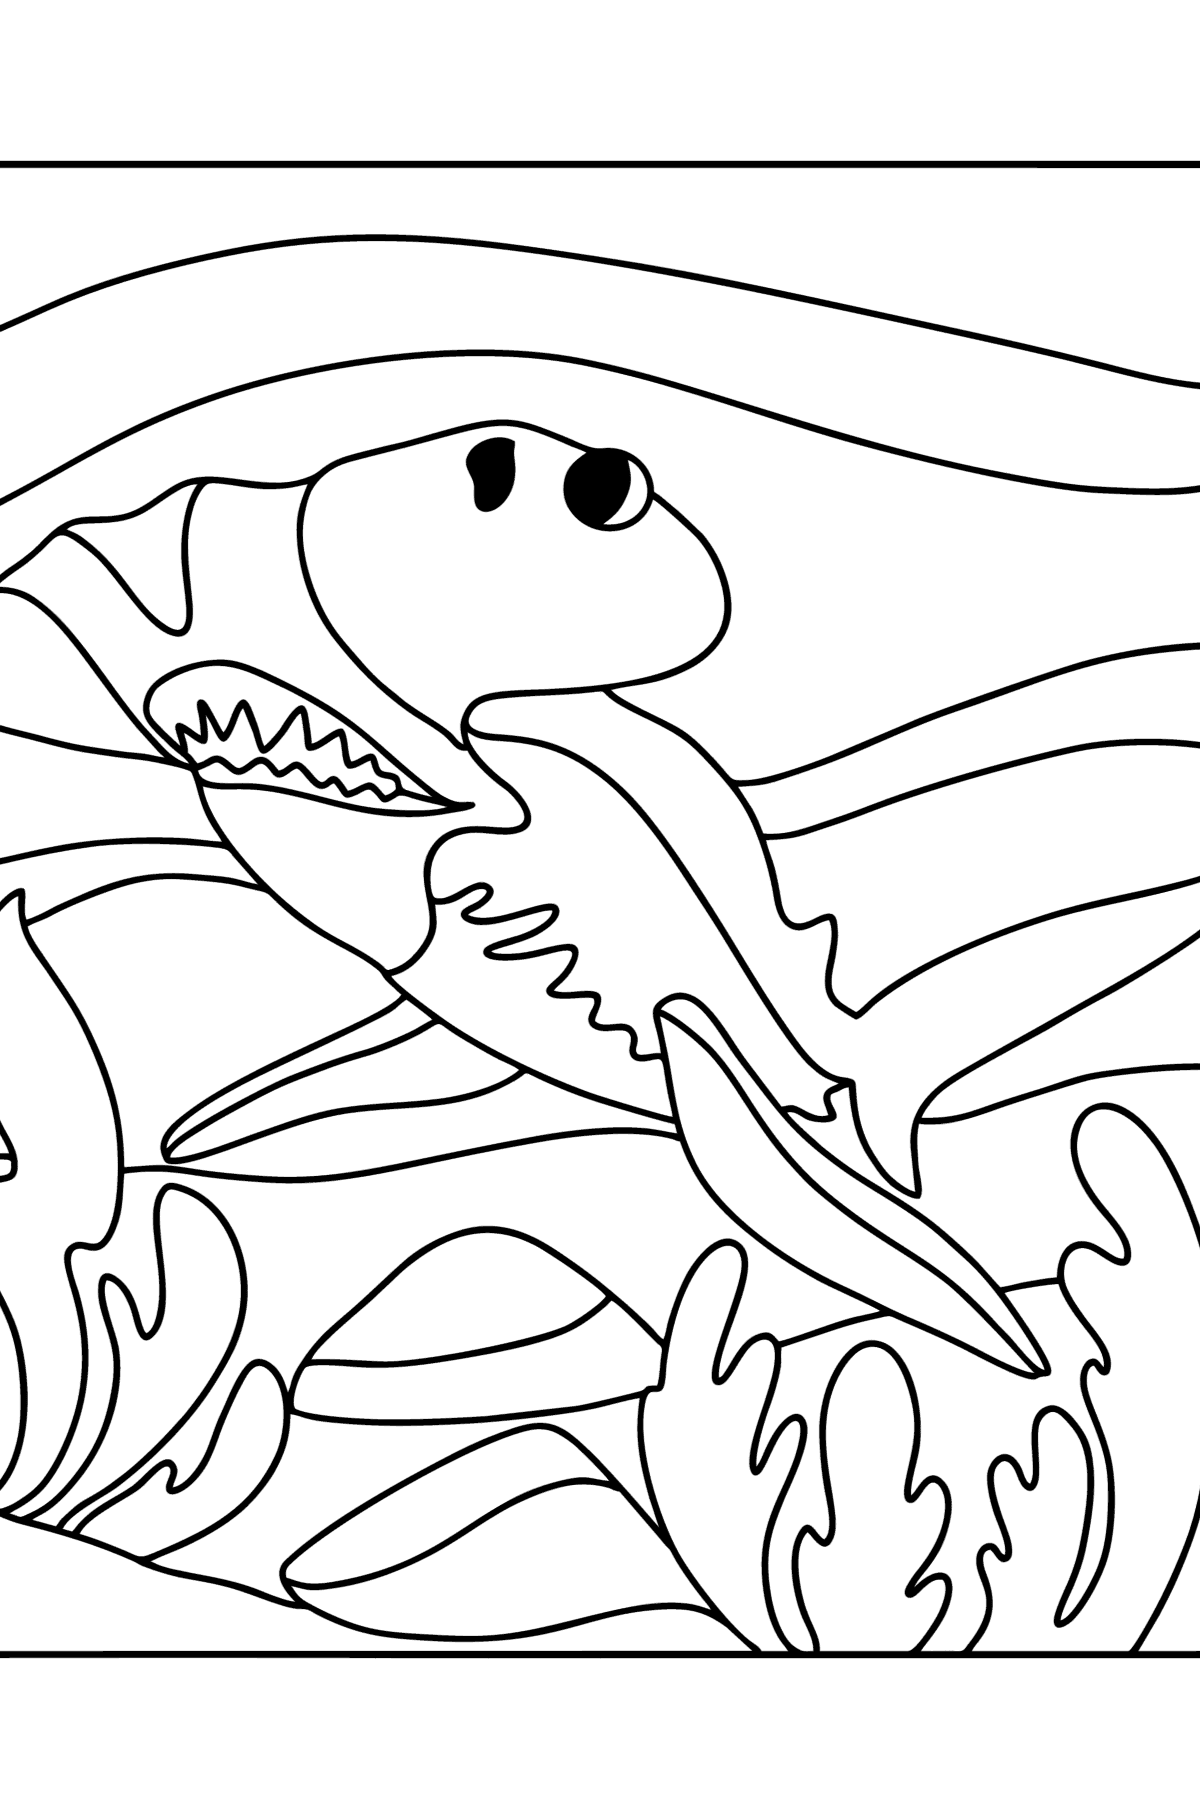 Desenho de Tubarão martelo para colorir - Imagens para Colorir para Crianças